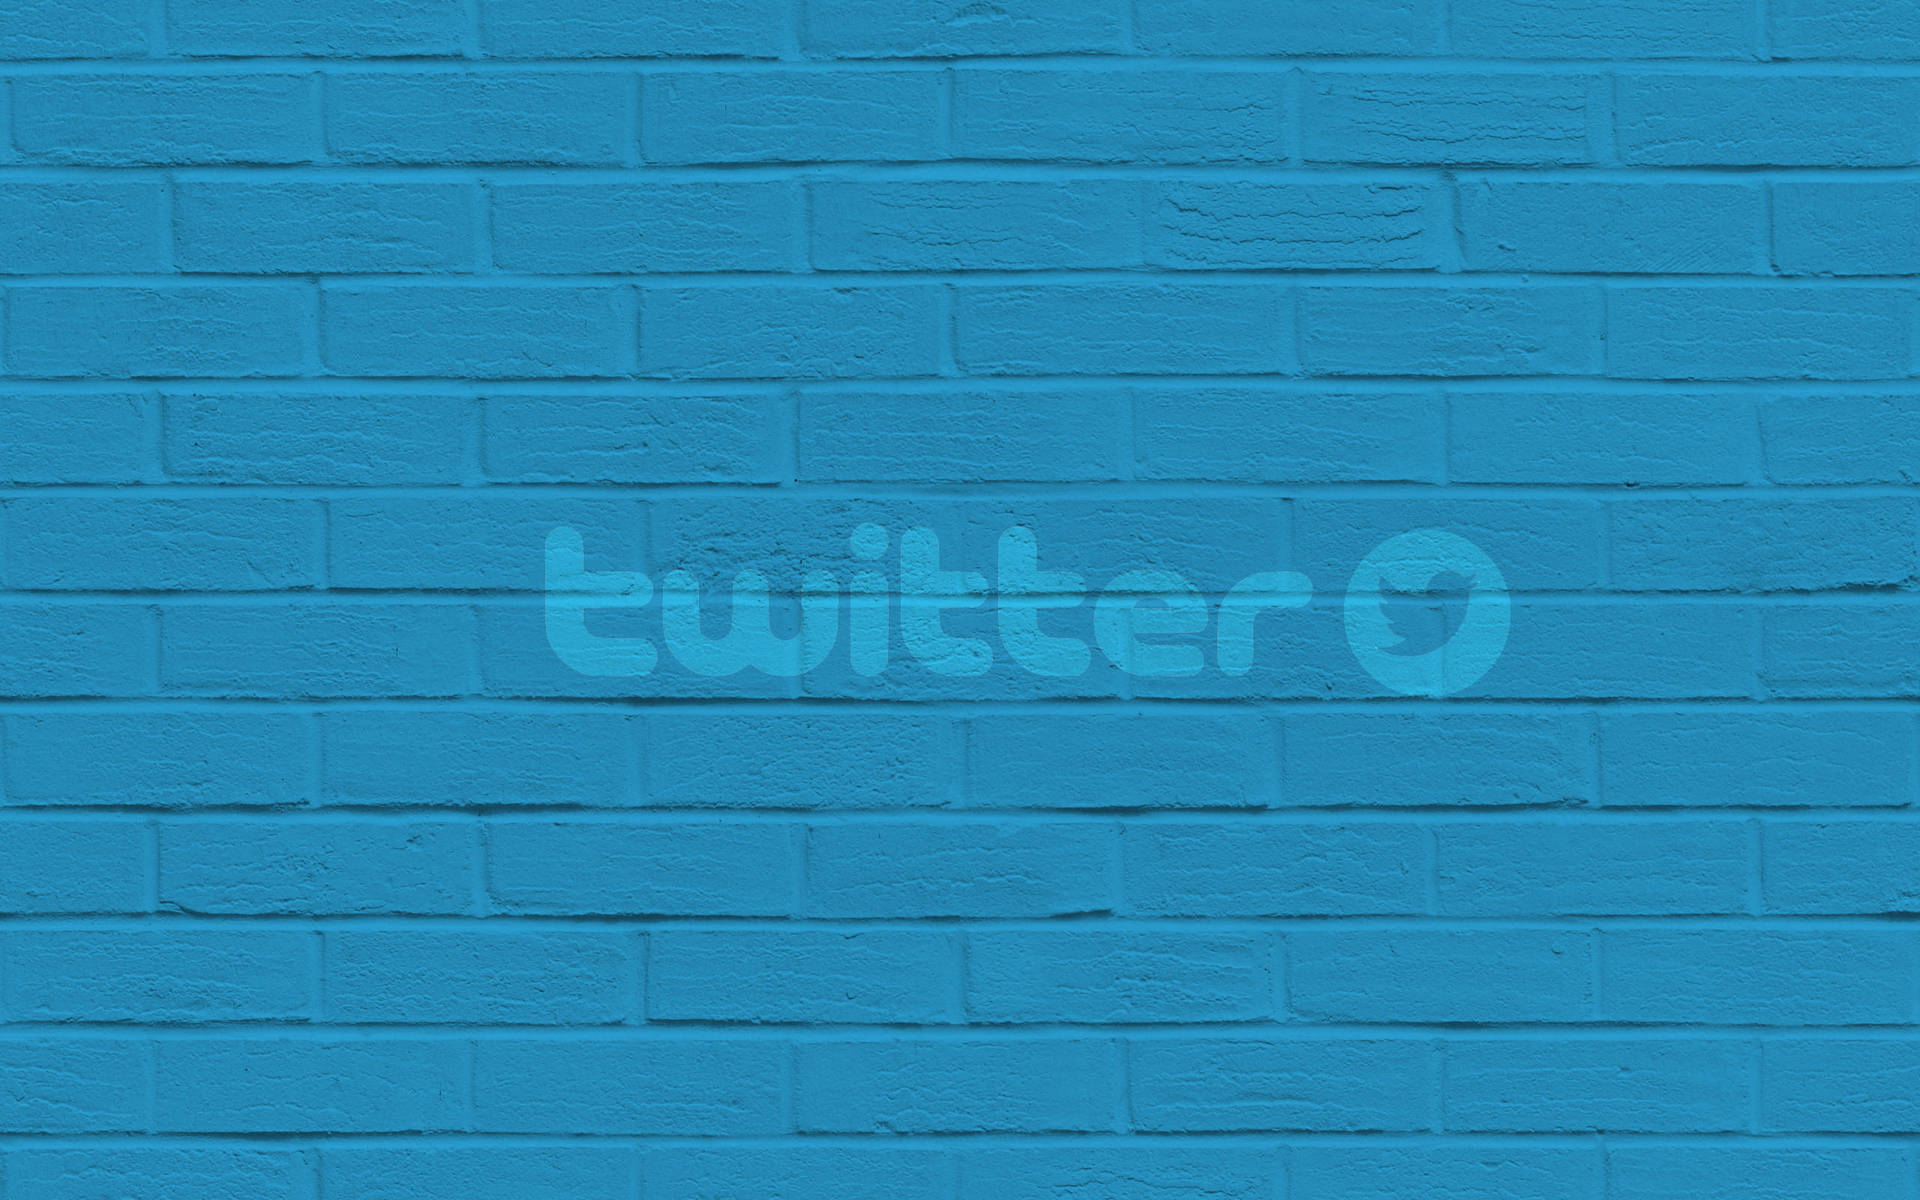 Twitter Brick Wall Wallpaper